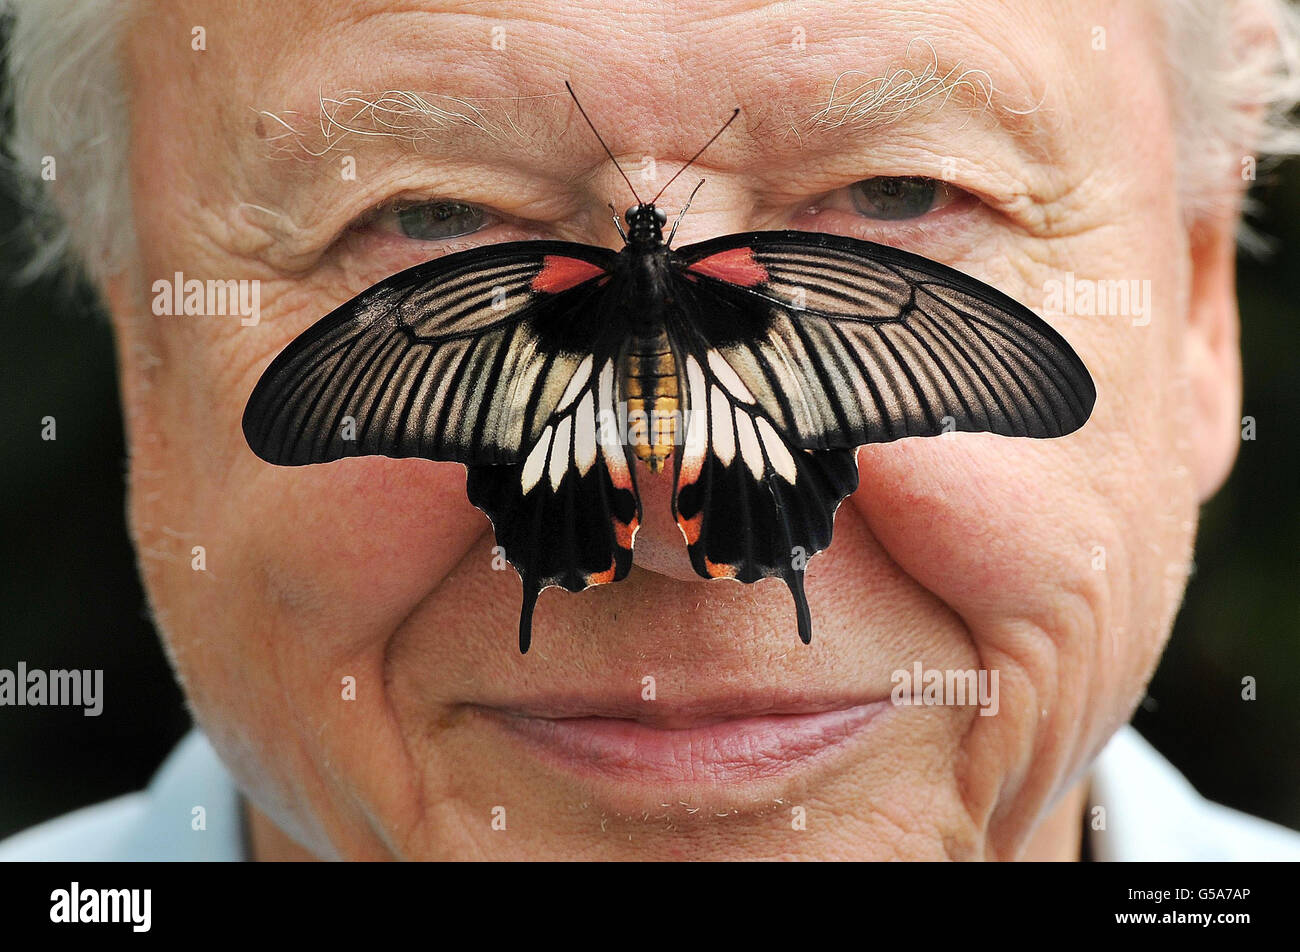 Il presidente della conservazione delle farfalle Sir David Attendborough con una grande farfalla mormone del sud-est asiatico sul naso, mentre ha lanciato il conte delle grandi farfalle allo zoo di Londra a Regent's Park, Londra. Foto Stock